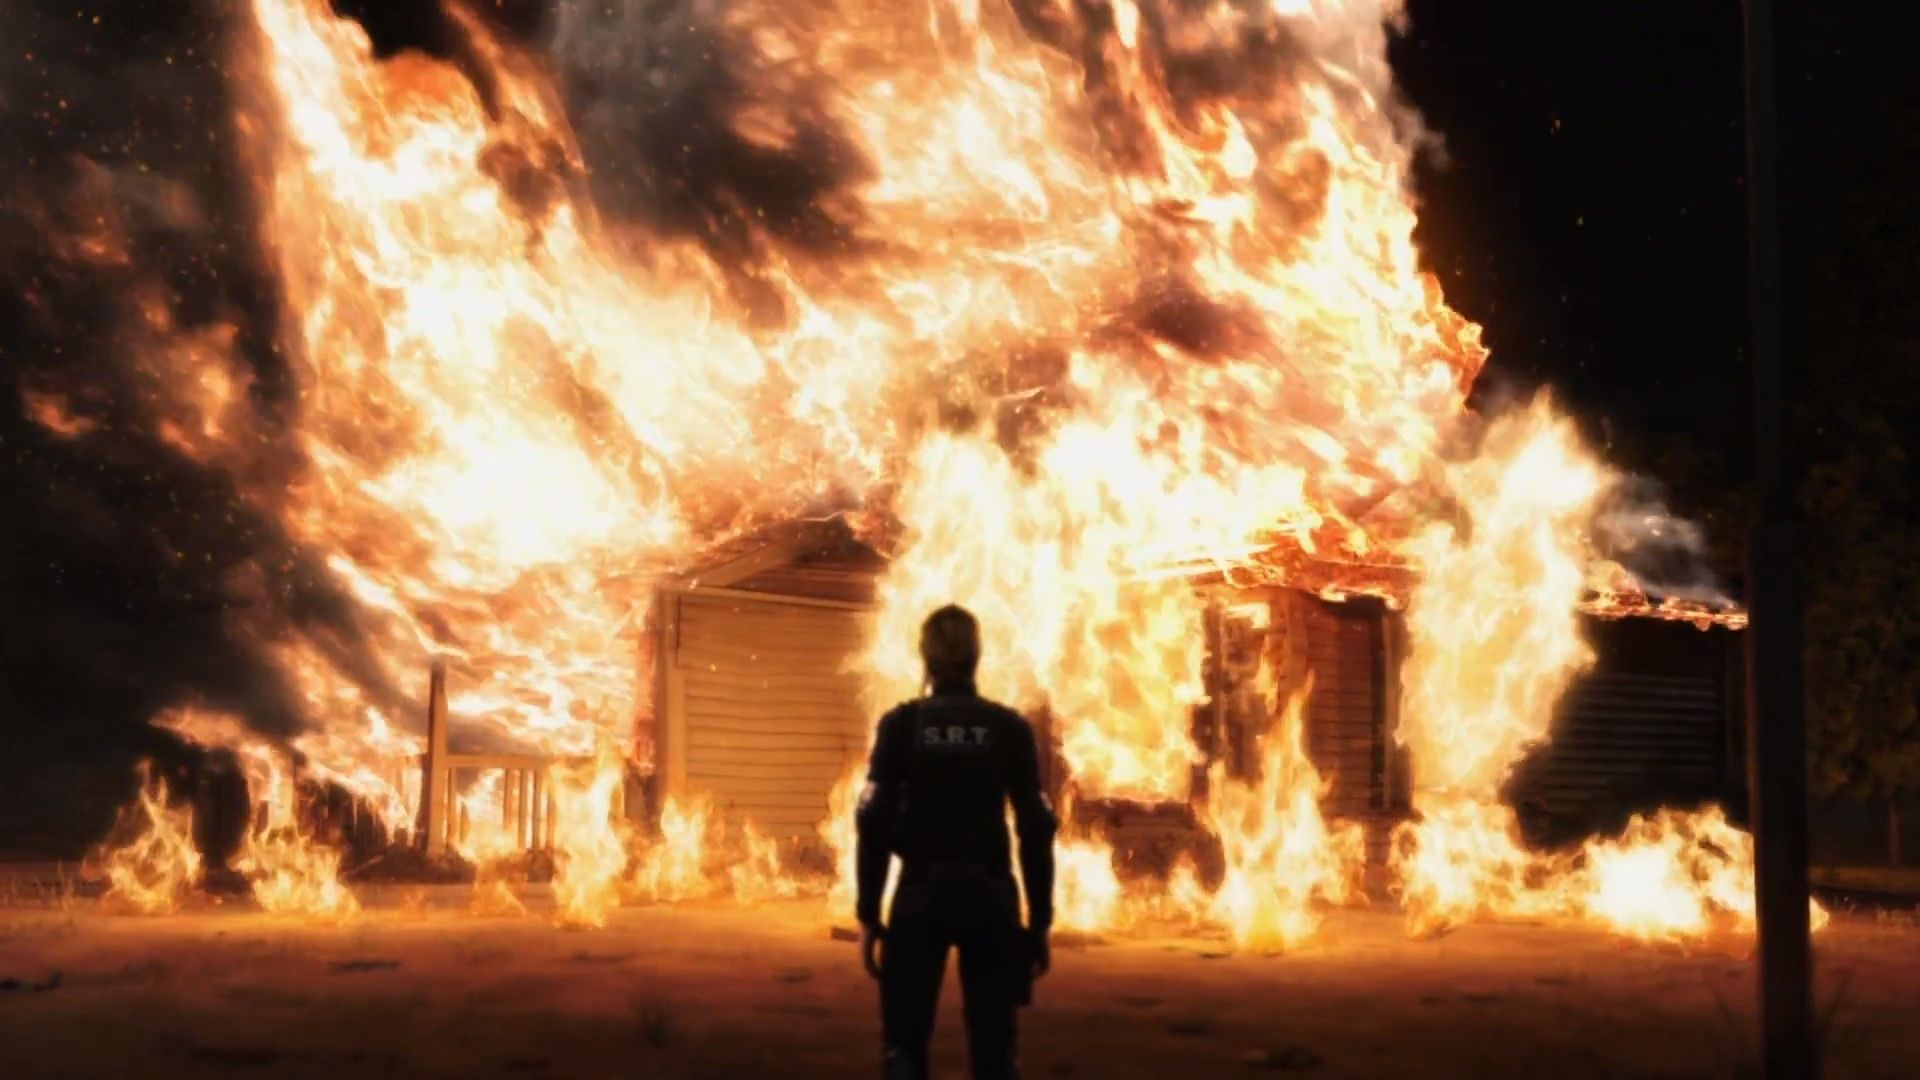 Resident Evil Degeneration: Burning House Scene Image